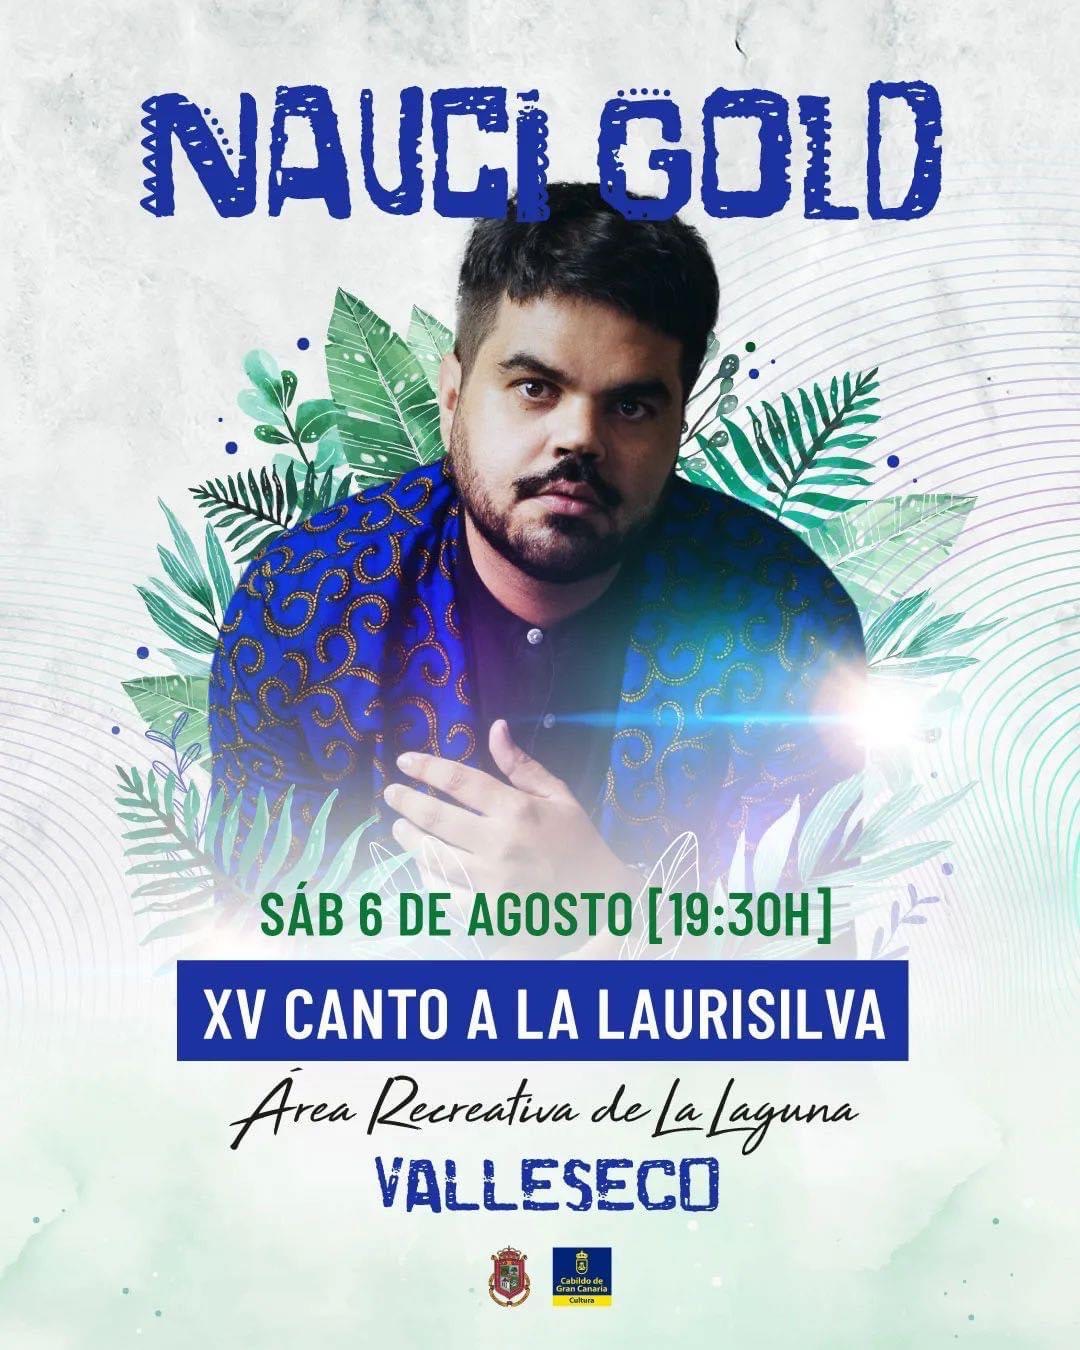 El sonido de Nauci Gold en el XV Canto a La Laurisilva de Valleseco